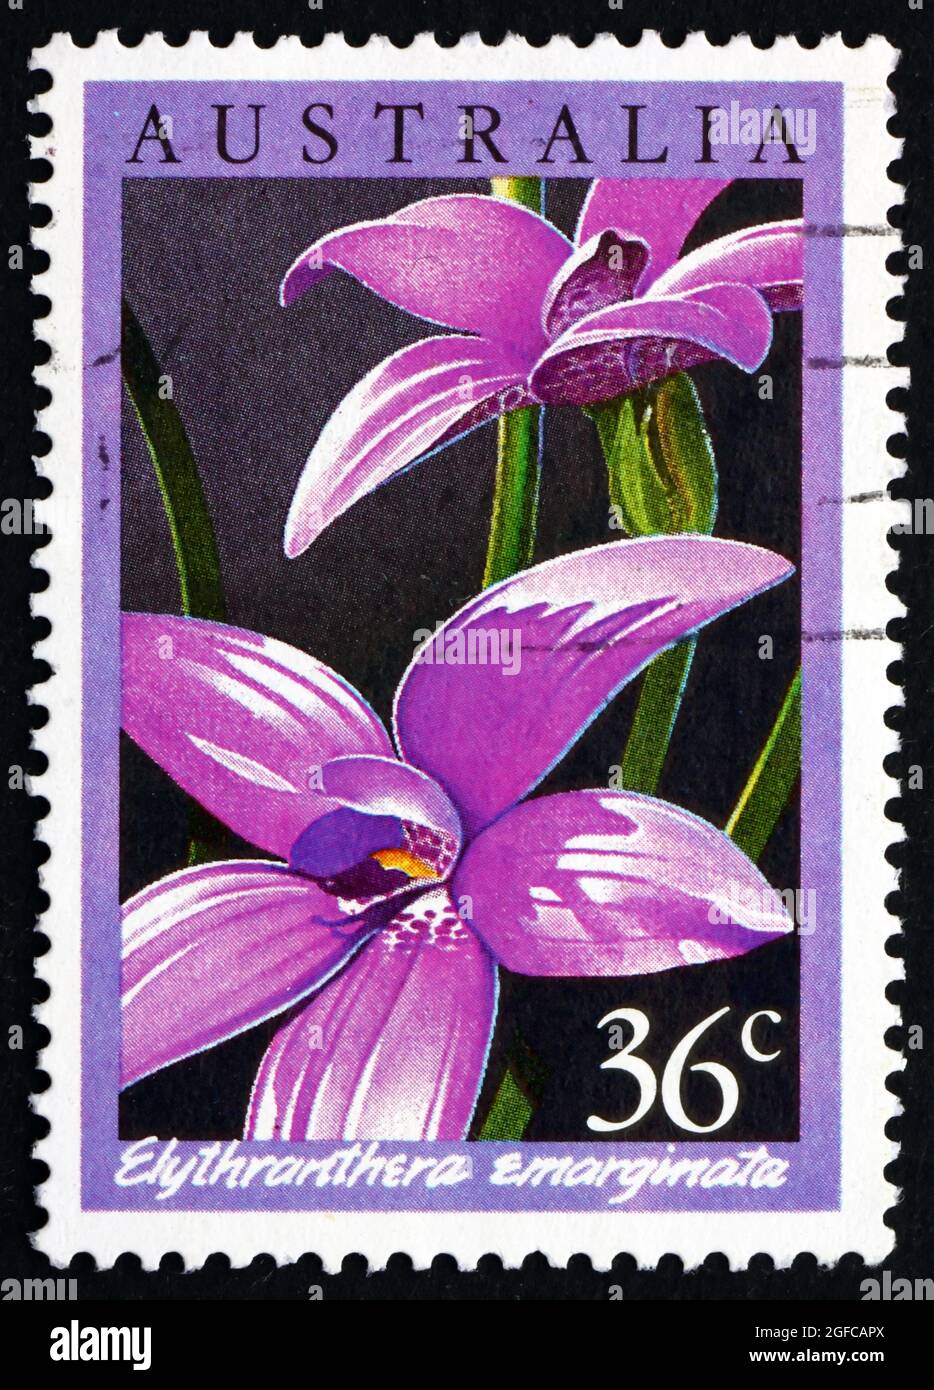 AUSTRALIEN - UM 1986: Eine in Australien gedruckte Briefmarke zeigt die Notched Elythranthera, Elythranthera emarginata, Orchid, um 1986 Stockfoto